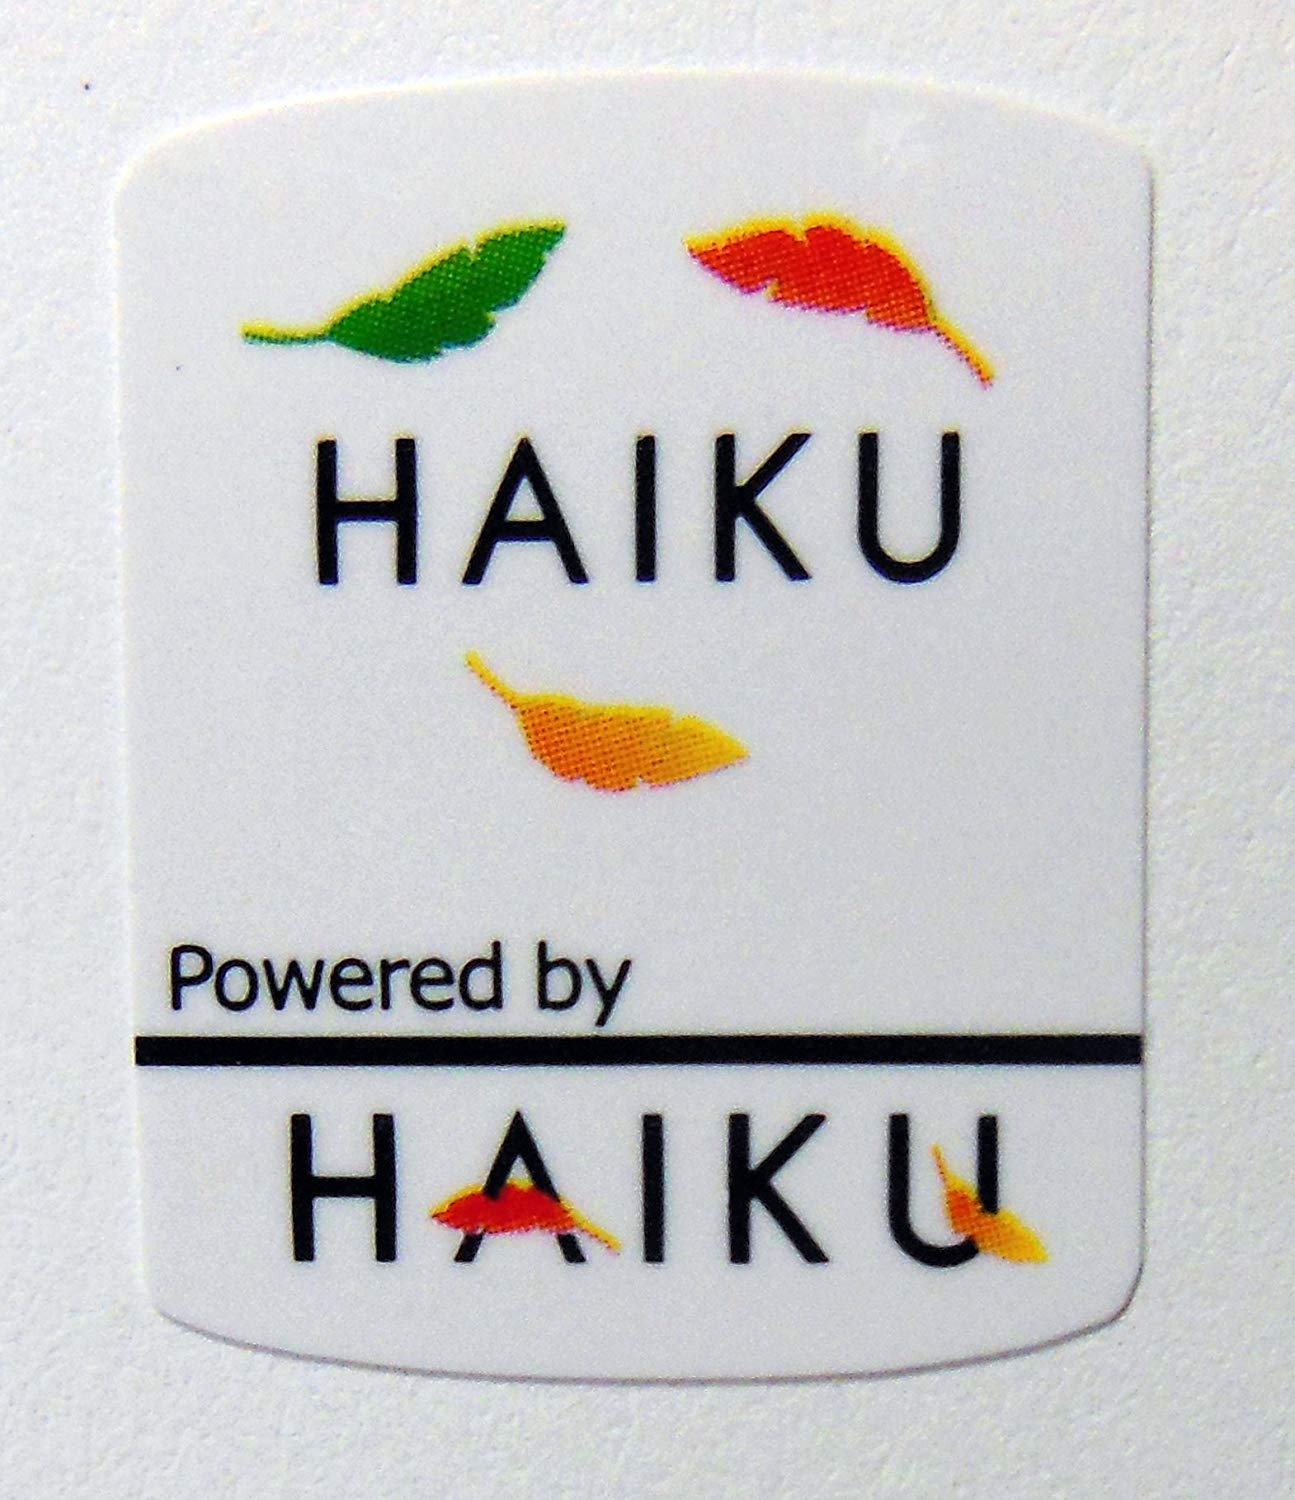 Haiku inspirado no BeOS continua trabalhando no ARM de 64 bits